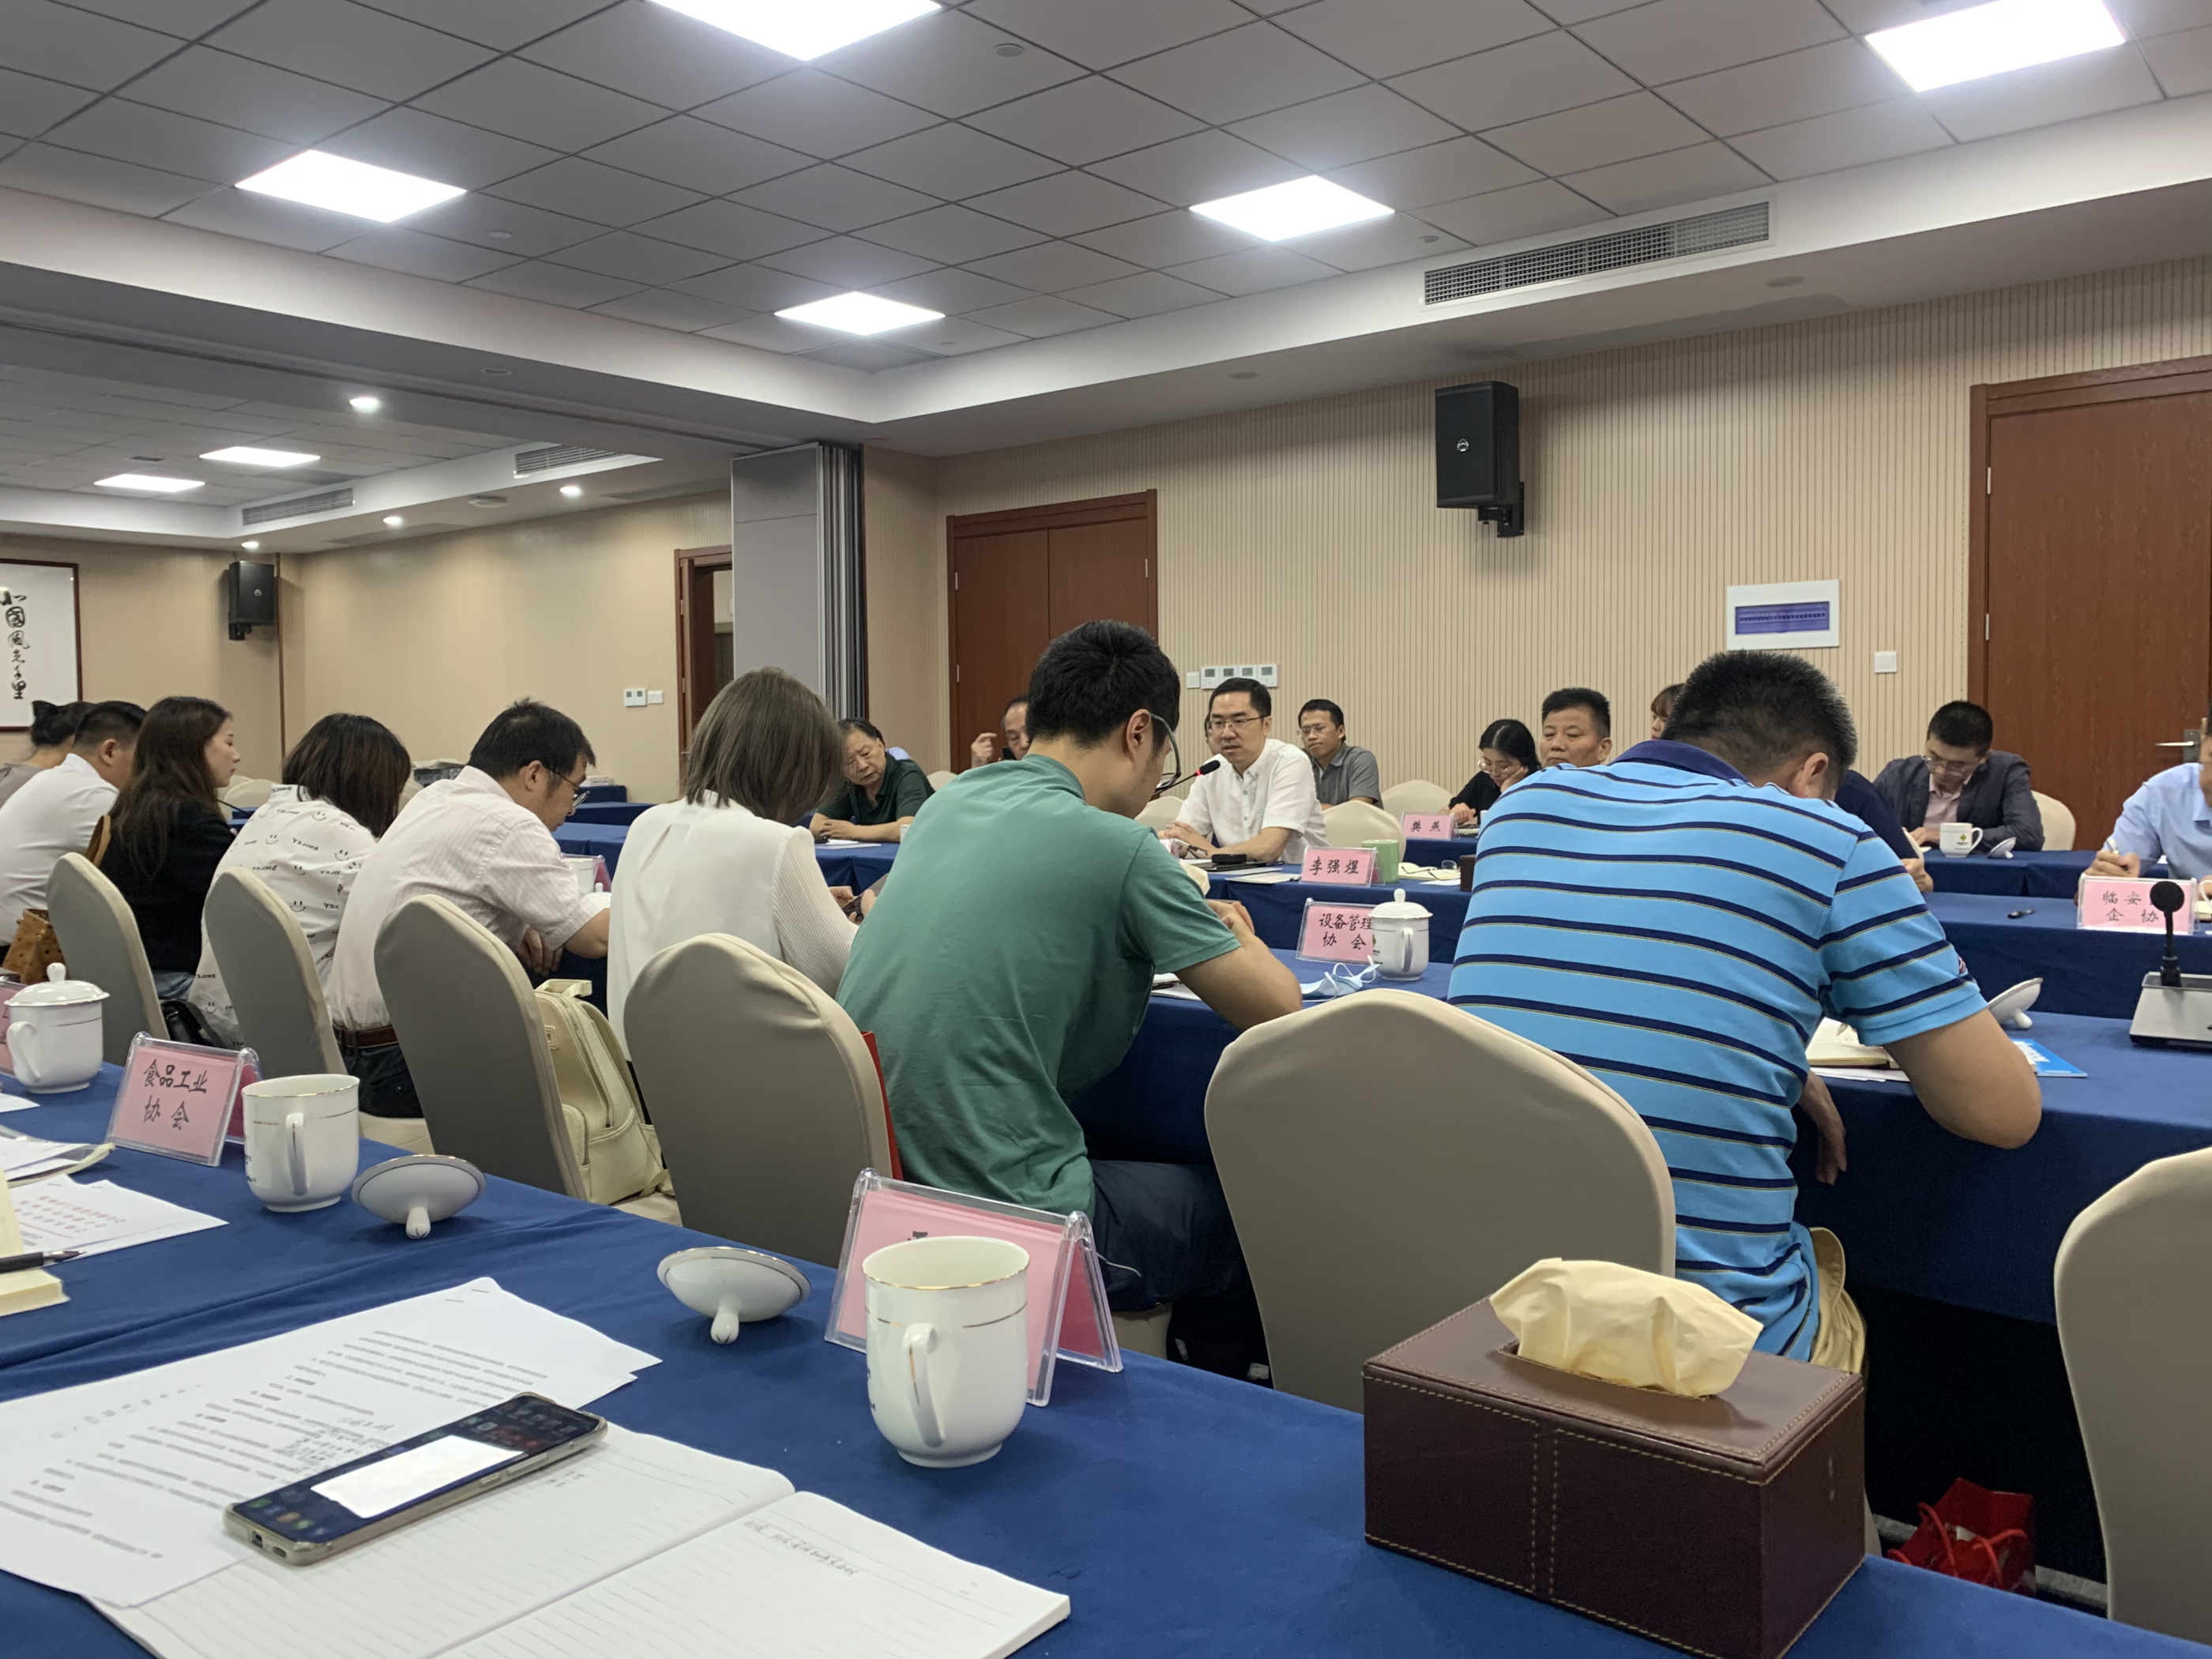 2021年9月15日。协会秘书处参加了由杭州市工业经济联合会组织的社会团体秘书长会议